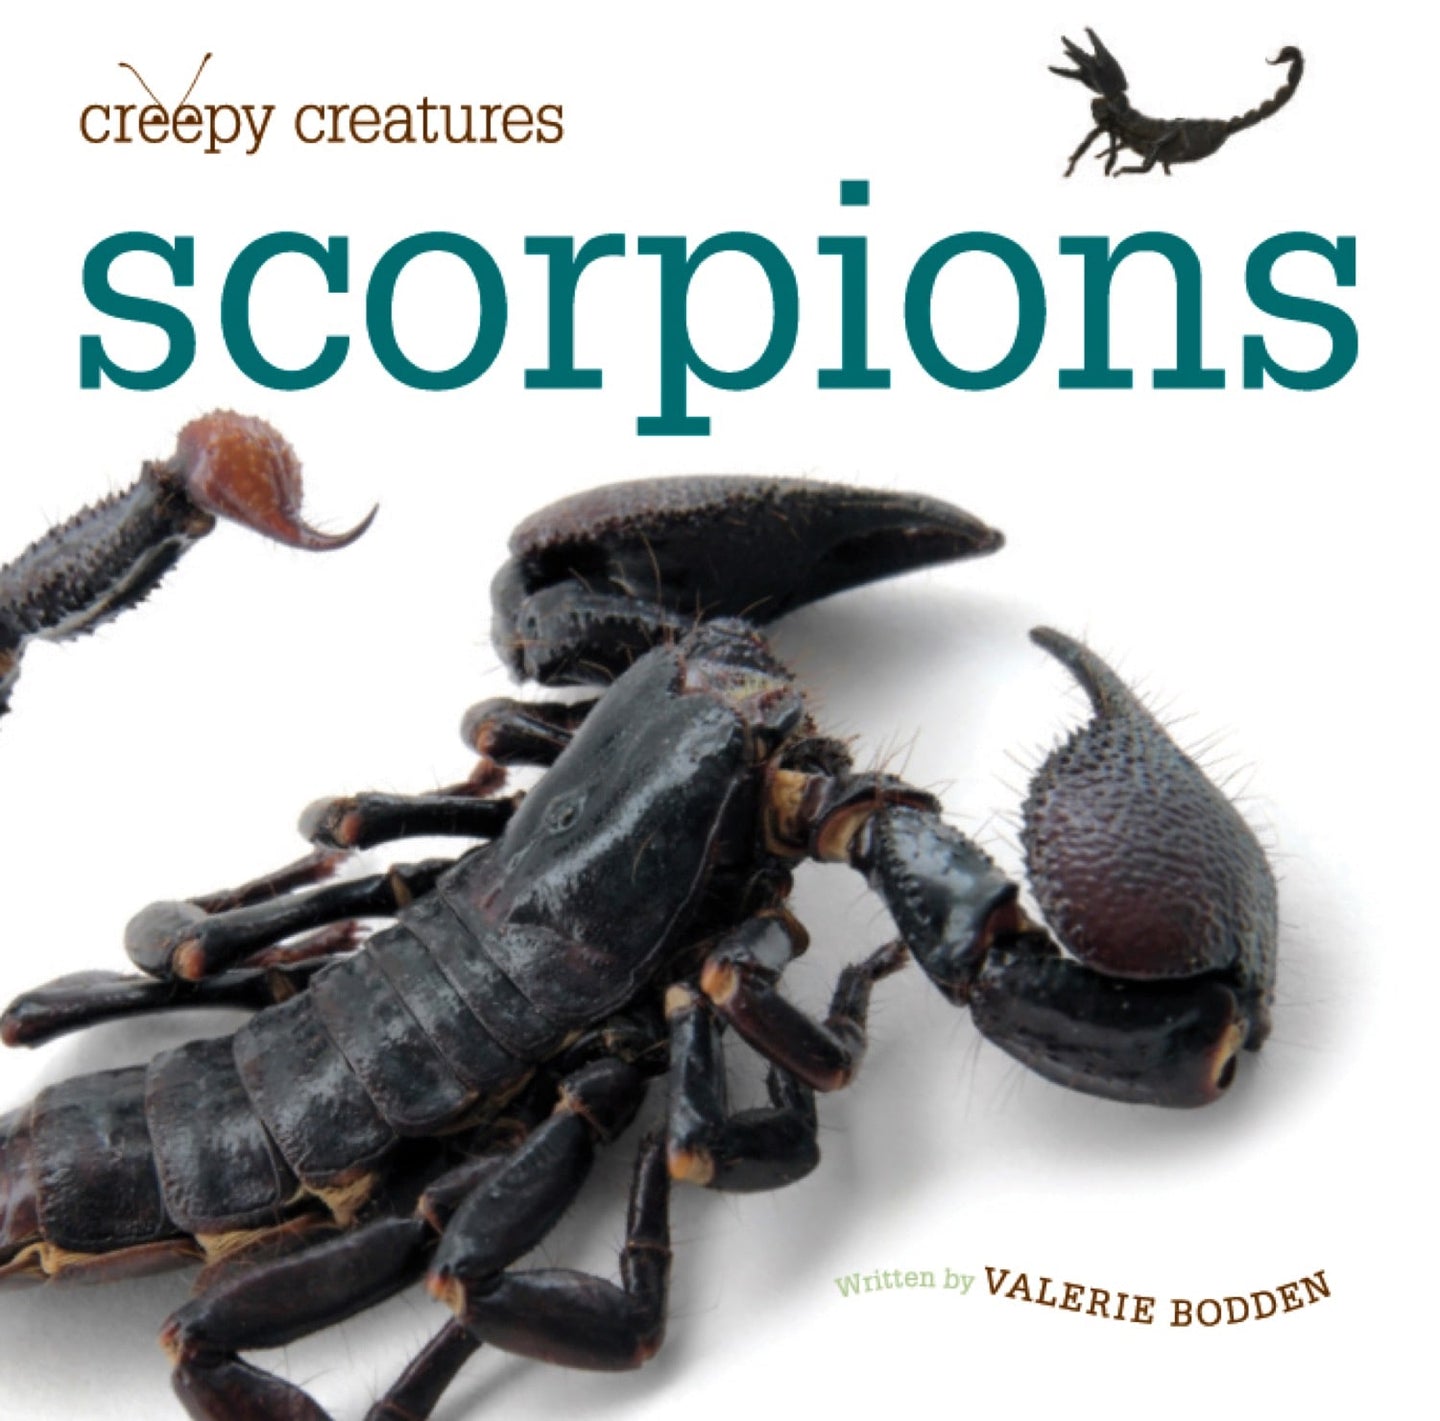 Creepy Creatures: Scorpions